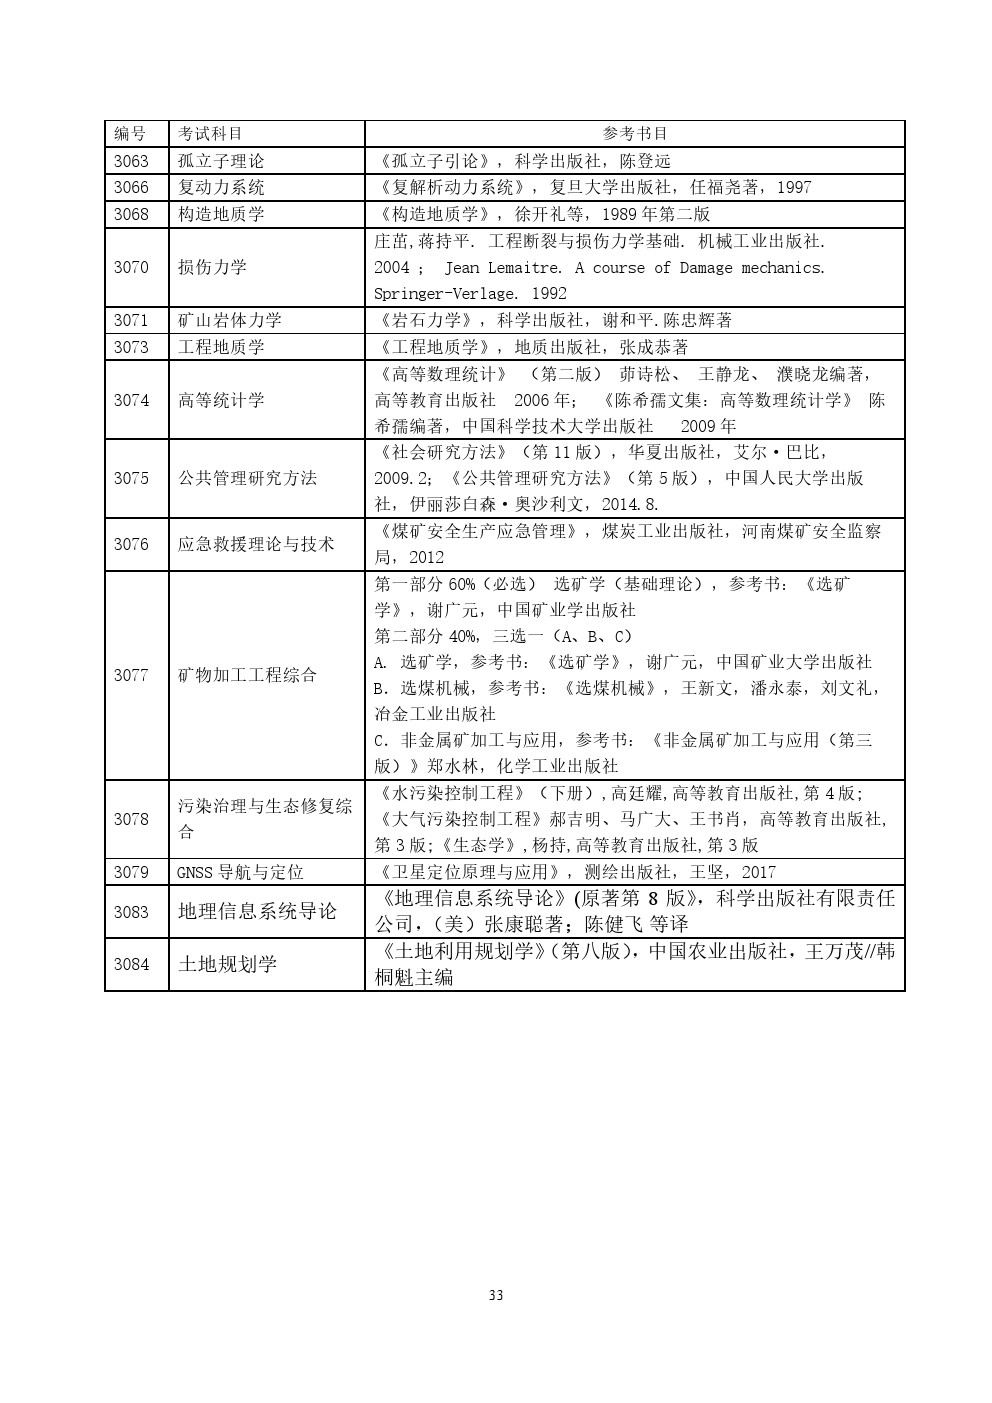 中国矿业大学(北京)2020年博士研究生招生考博参考书目